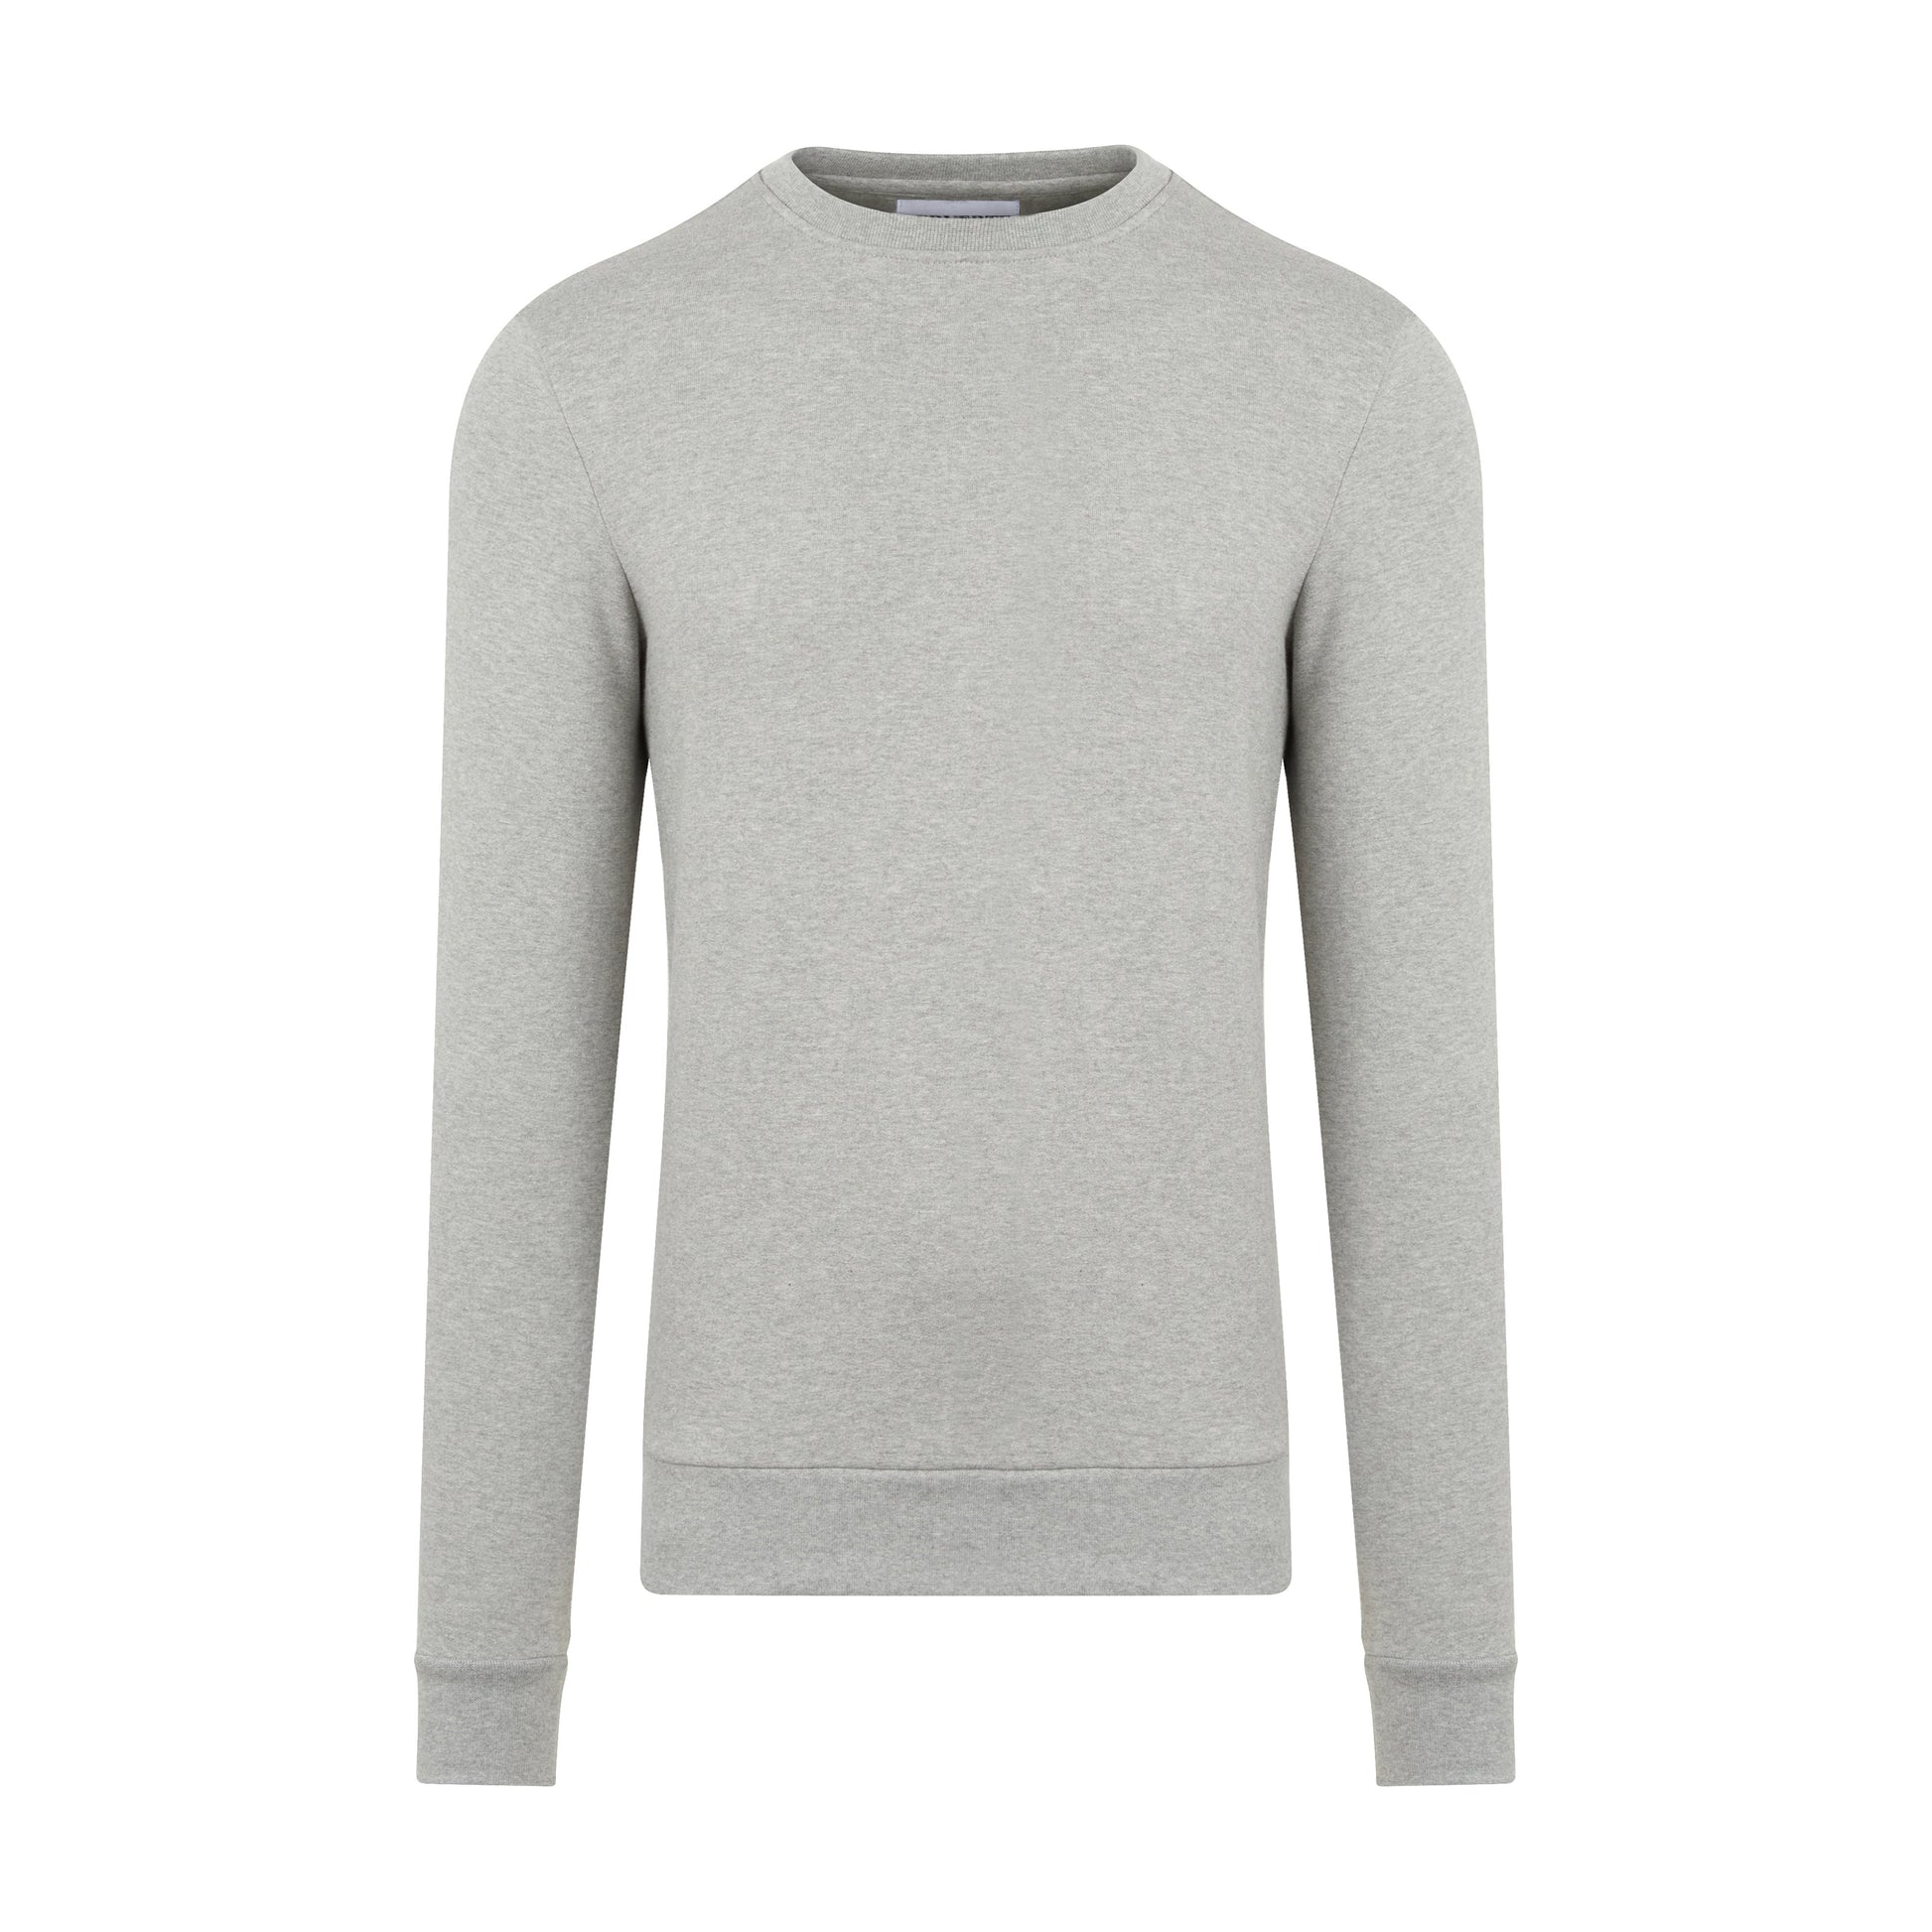 Men's Grey Sweatshirt | Grey Cotton Sweatshirt | Erverte Paris